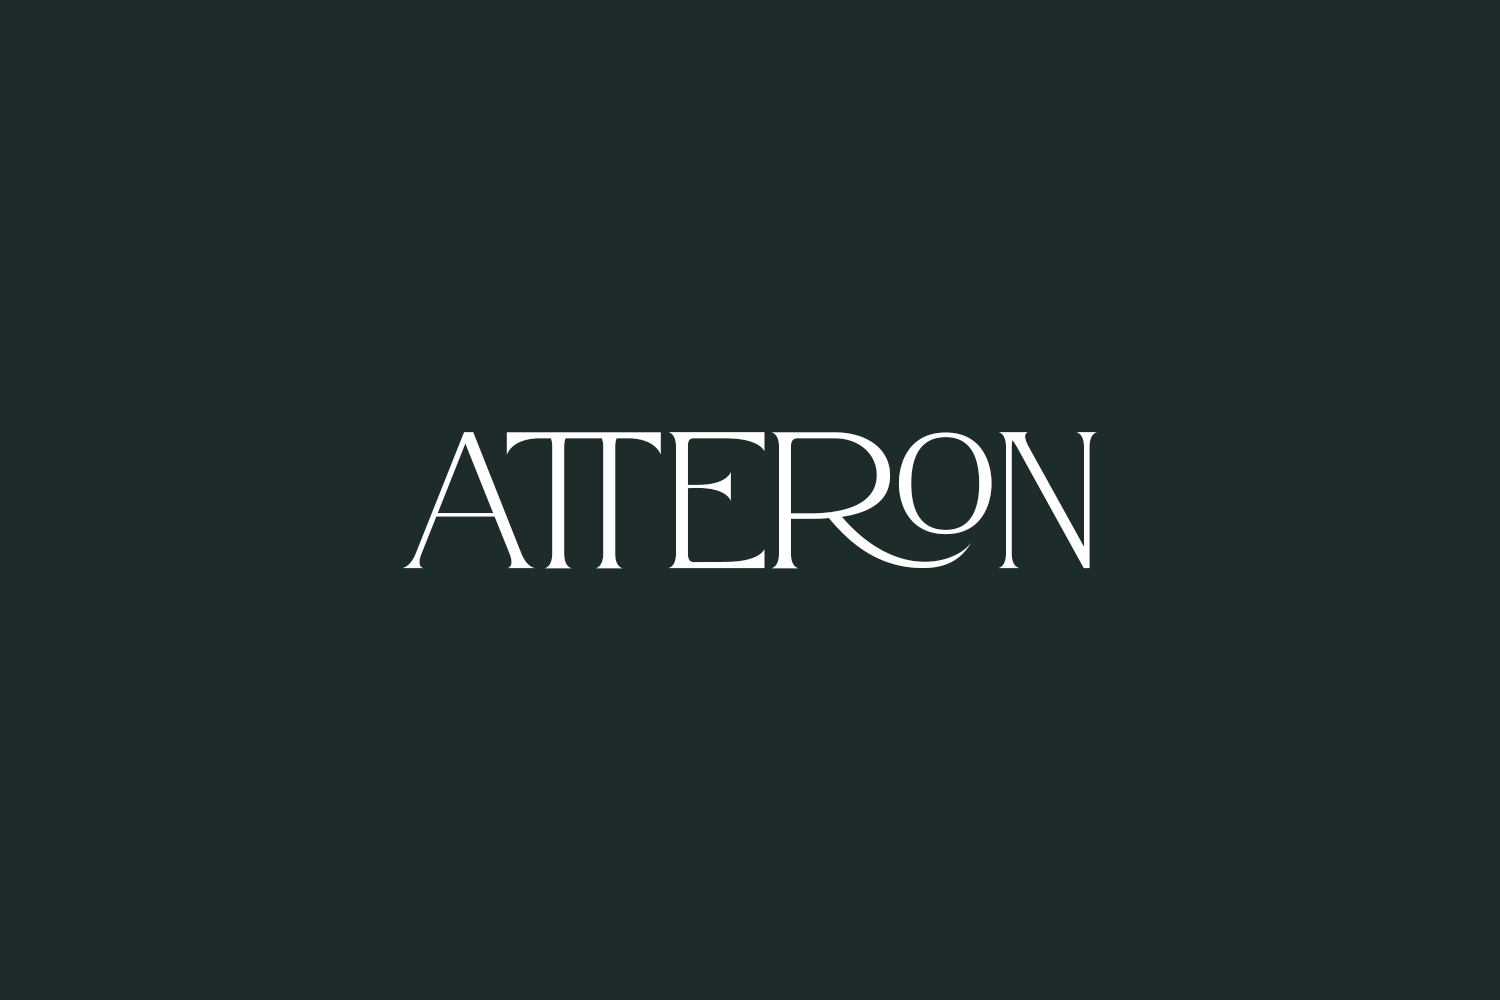 Atteron Free Font